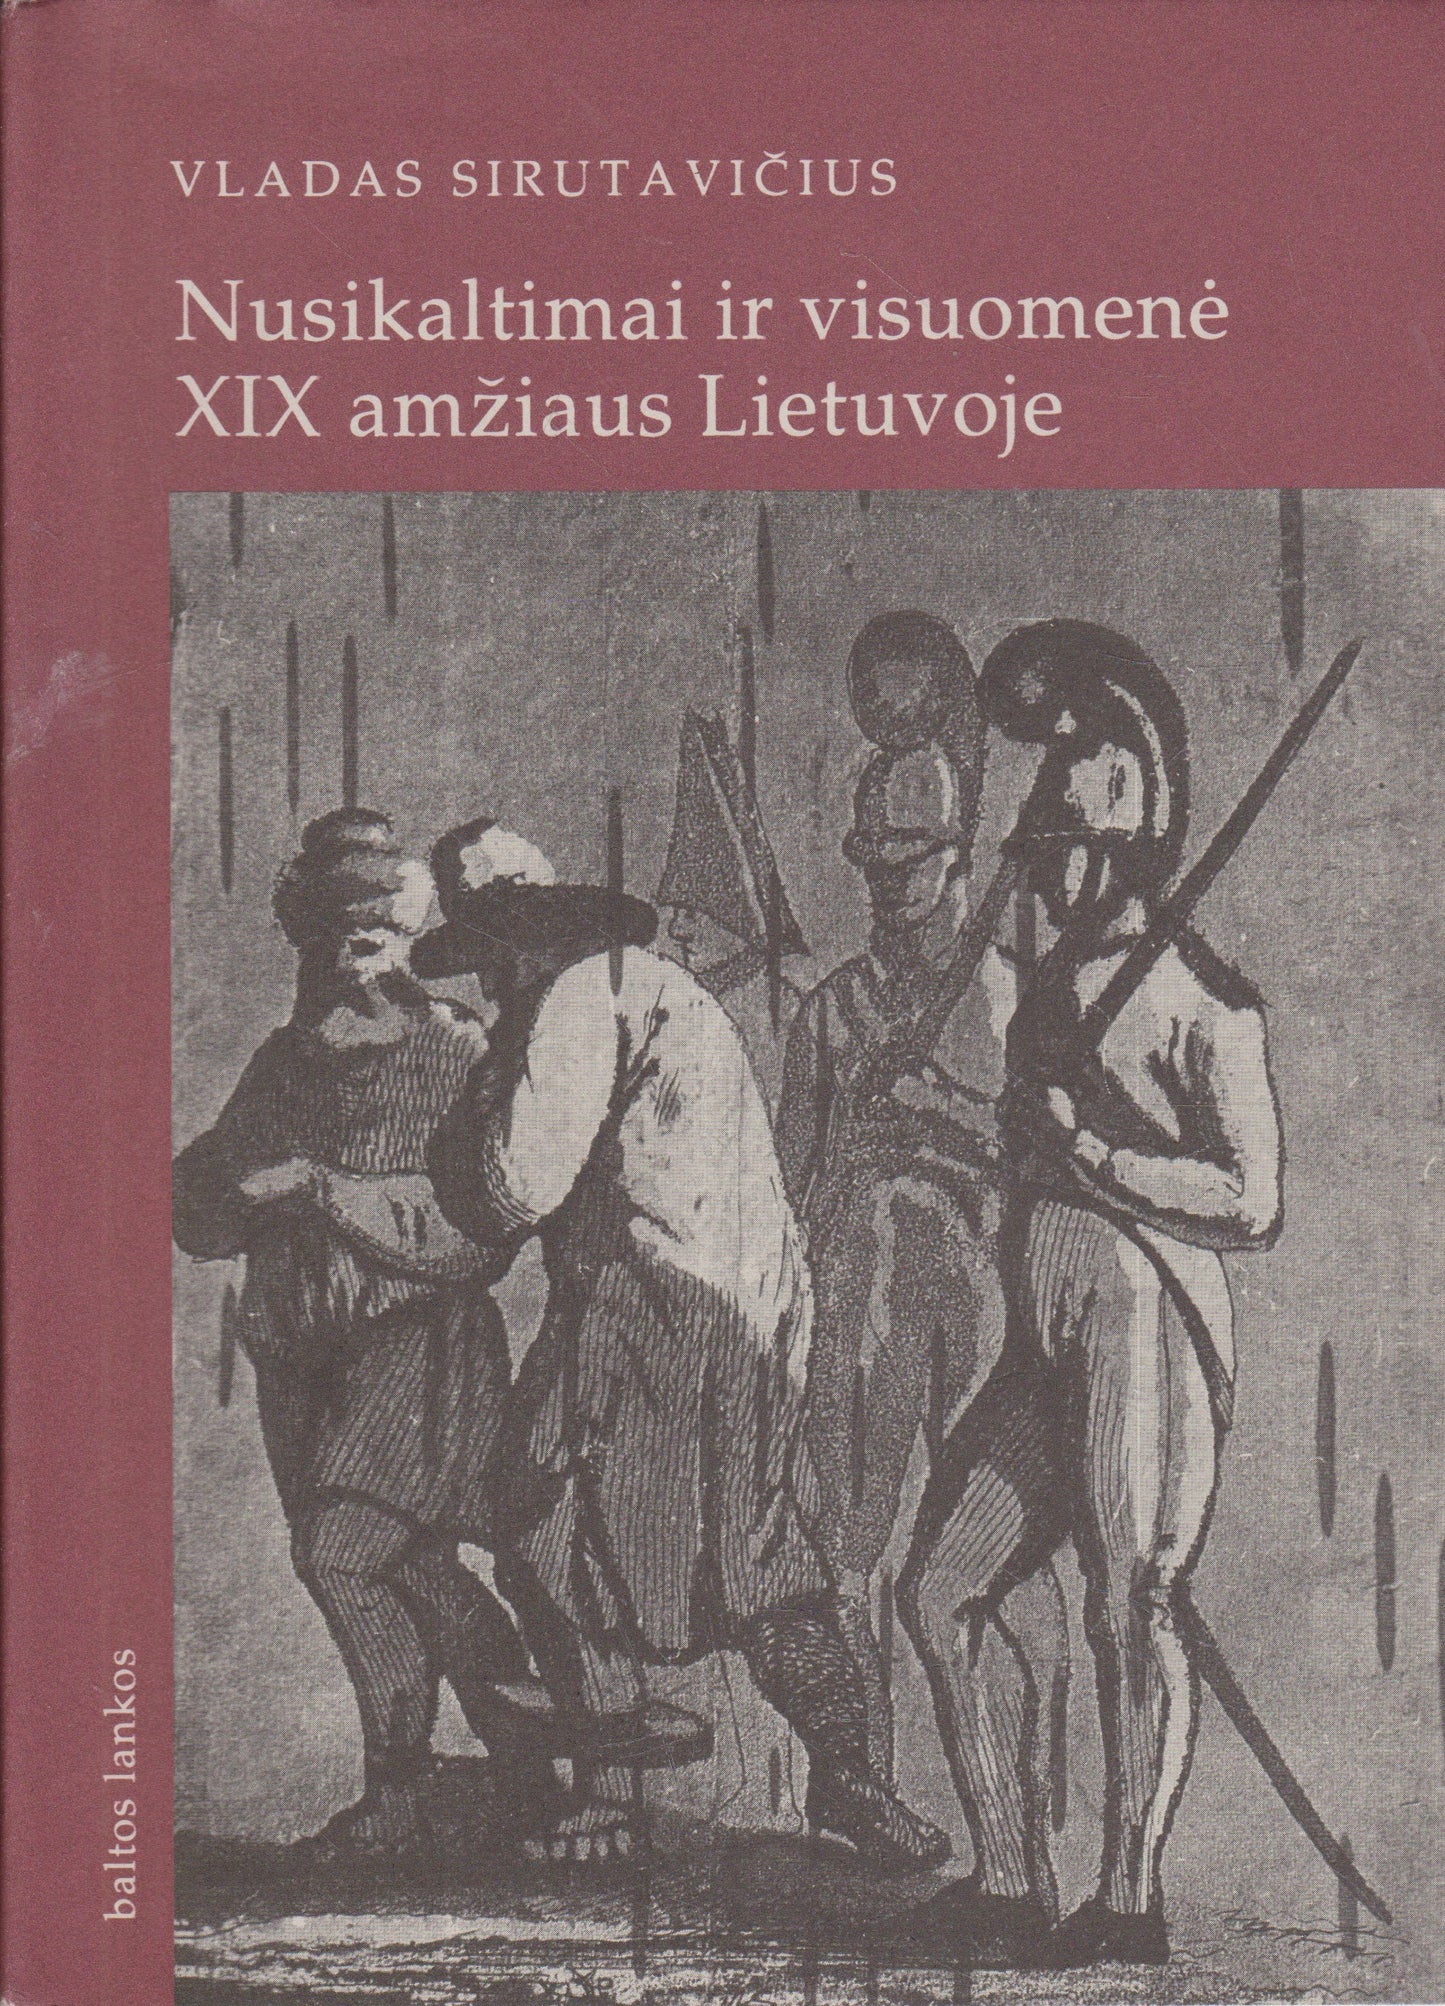 Vladas Sirutavičius - Nusikaltimai ir visuomenė XIX amžiaus Lietuvoje